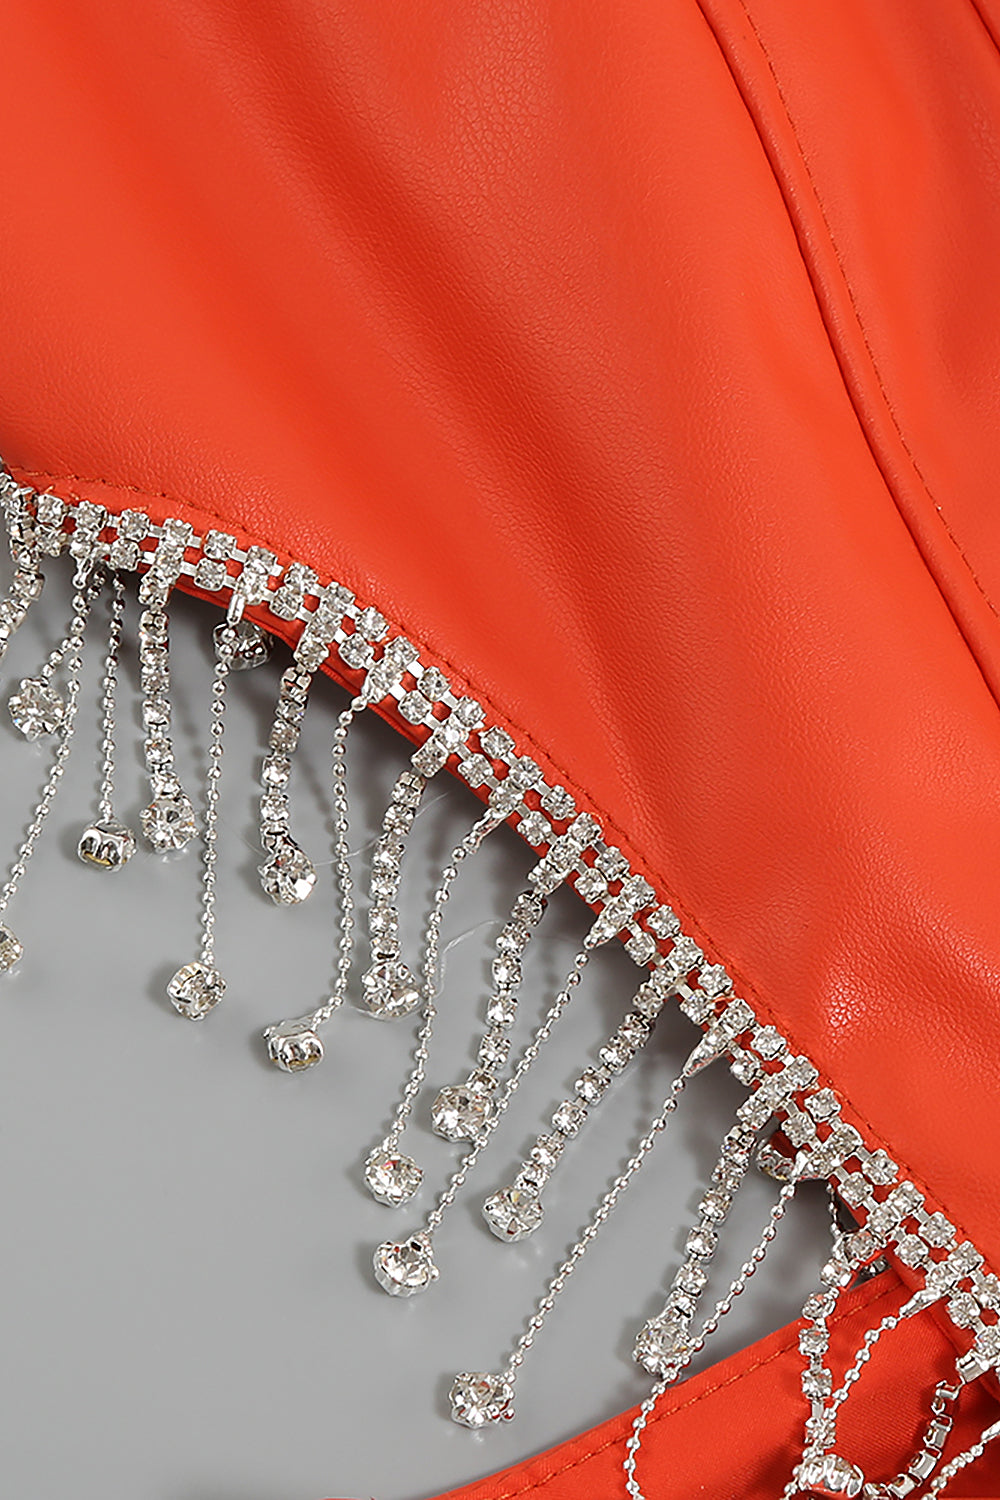 Mini vestido piezas de cuero sintético con panel de plumas sin espalda de PU naranja